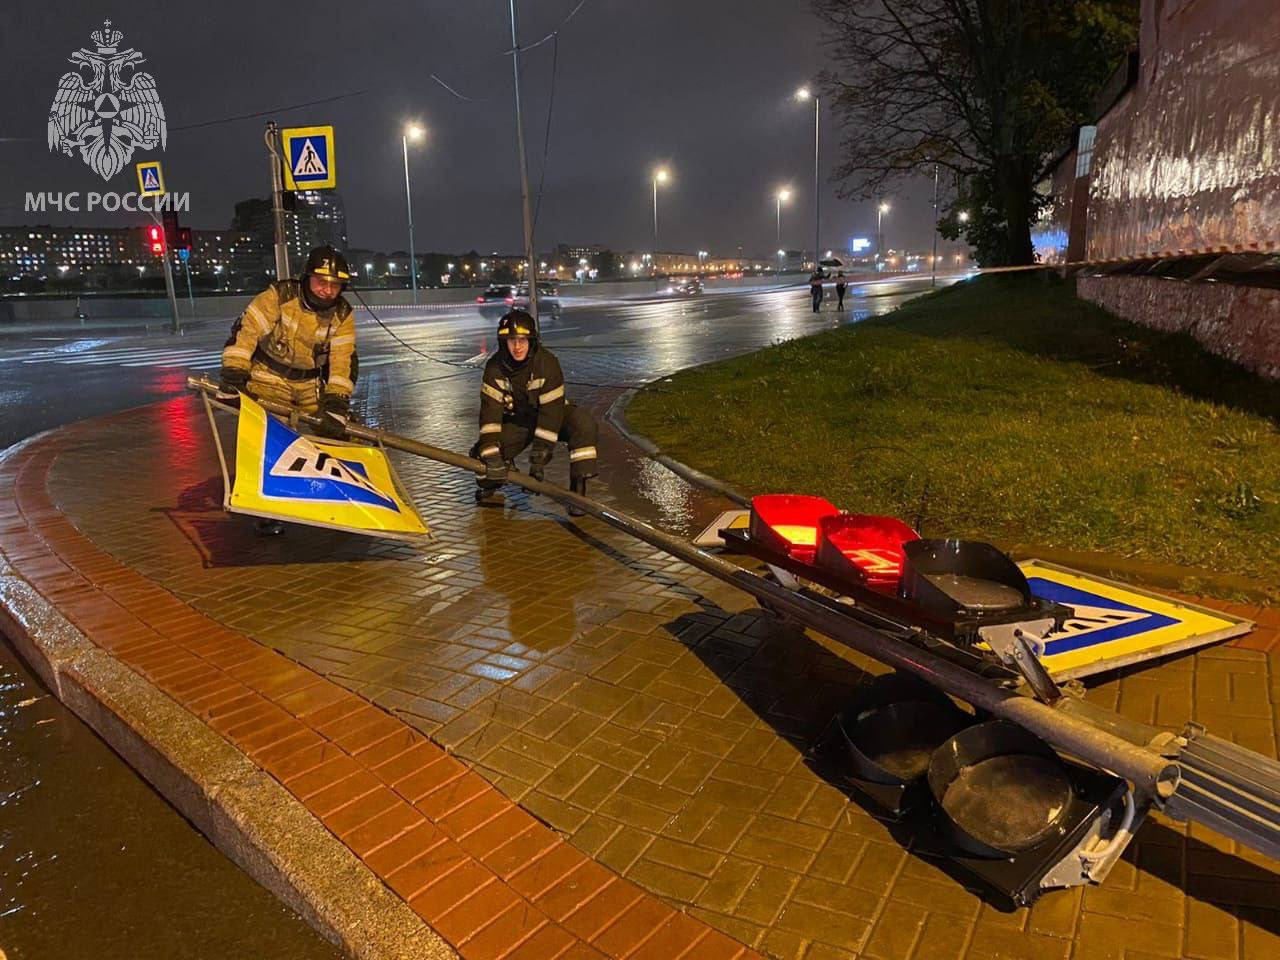 МЧС подводит итоги ветреного дня в Петербурге. Среди жертв деревья, машины и дорожные знаки